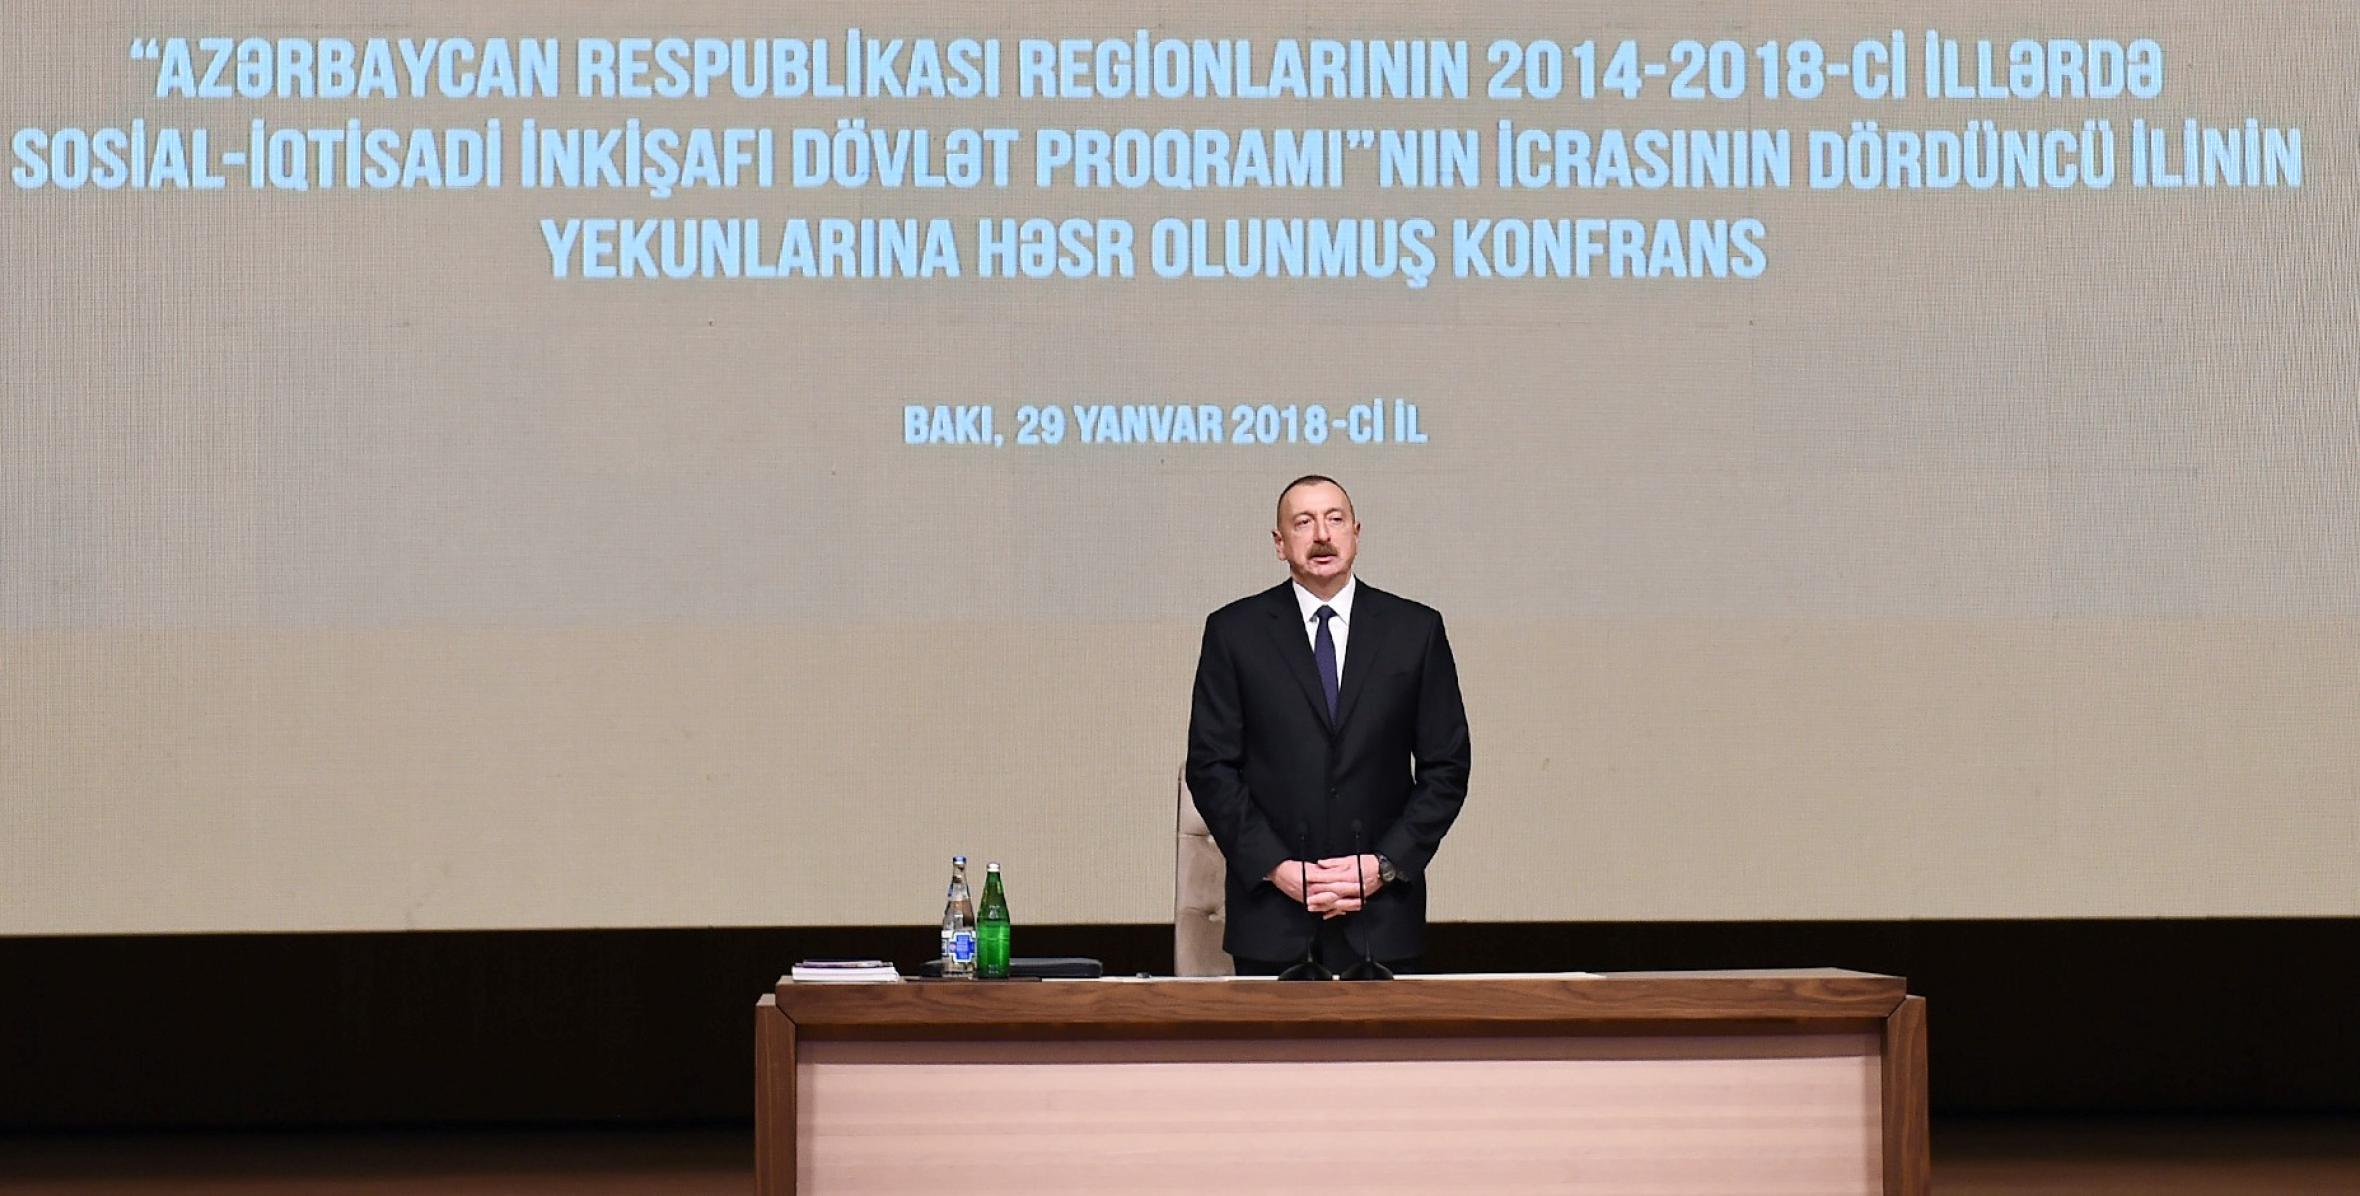 Вступительная речь Ильхама Алиева на конференции посвященной итогам четвертого года реализации Государственной программы социально-экономического развития регионов в 2014-2018 годах